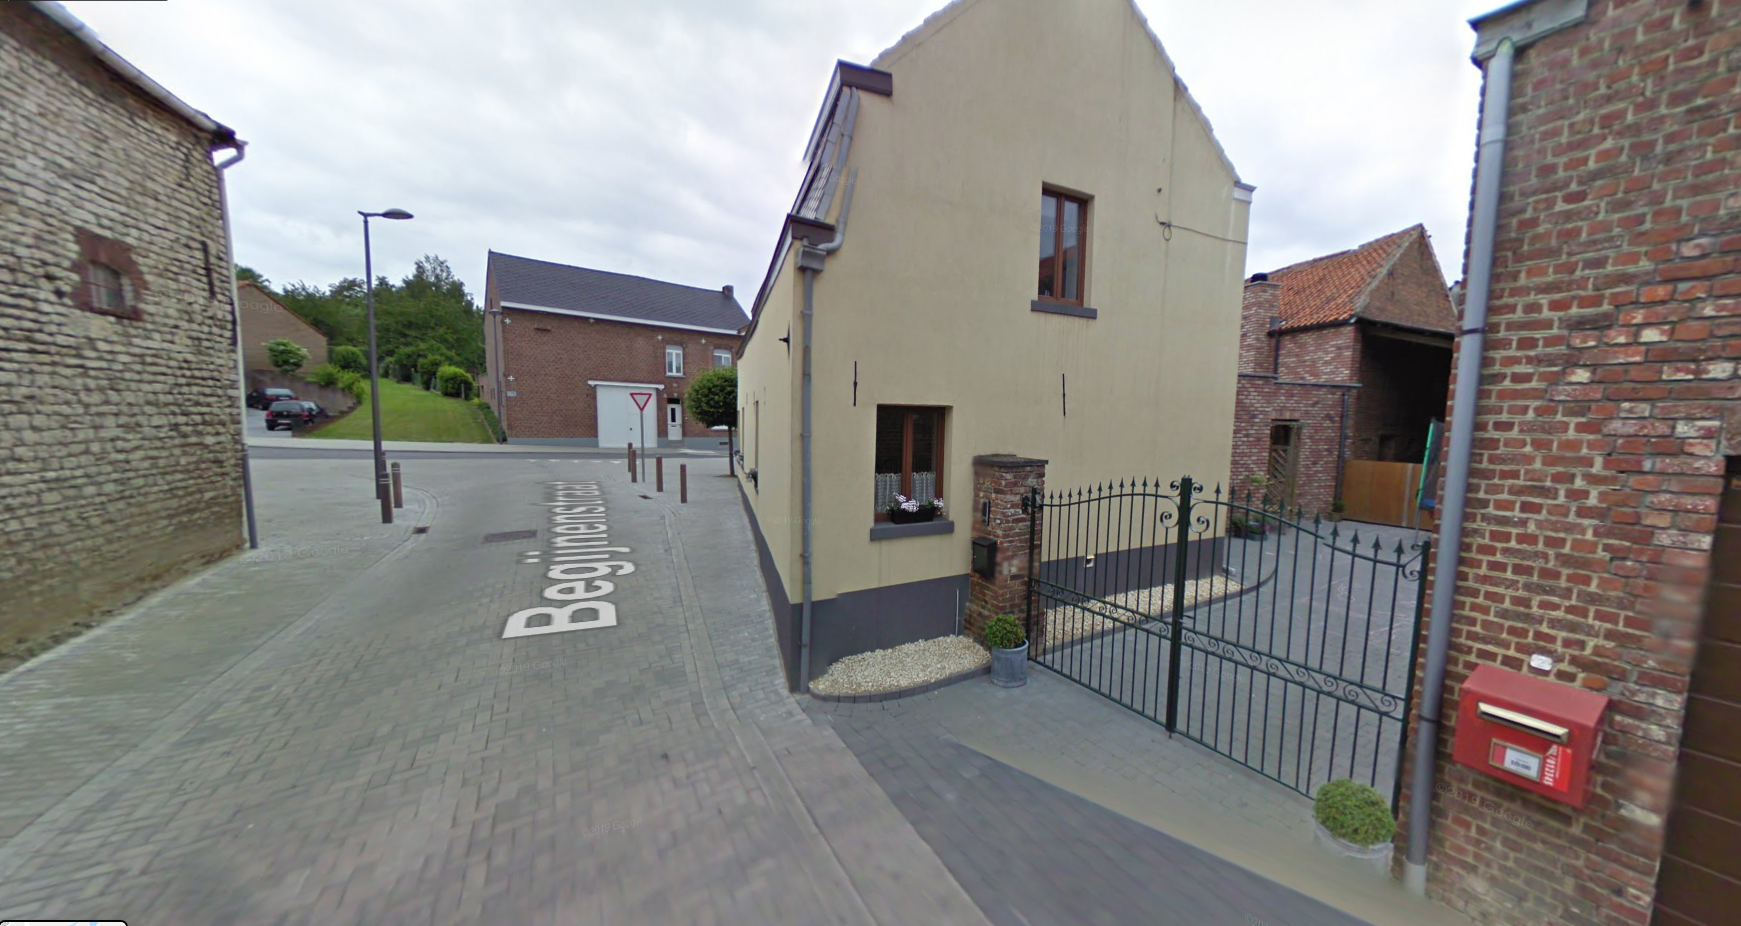 Laatste brievenbus weg in sommige dorpen (Tienen) - Het Nieuwsblad